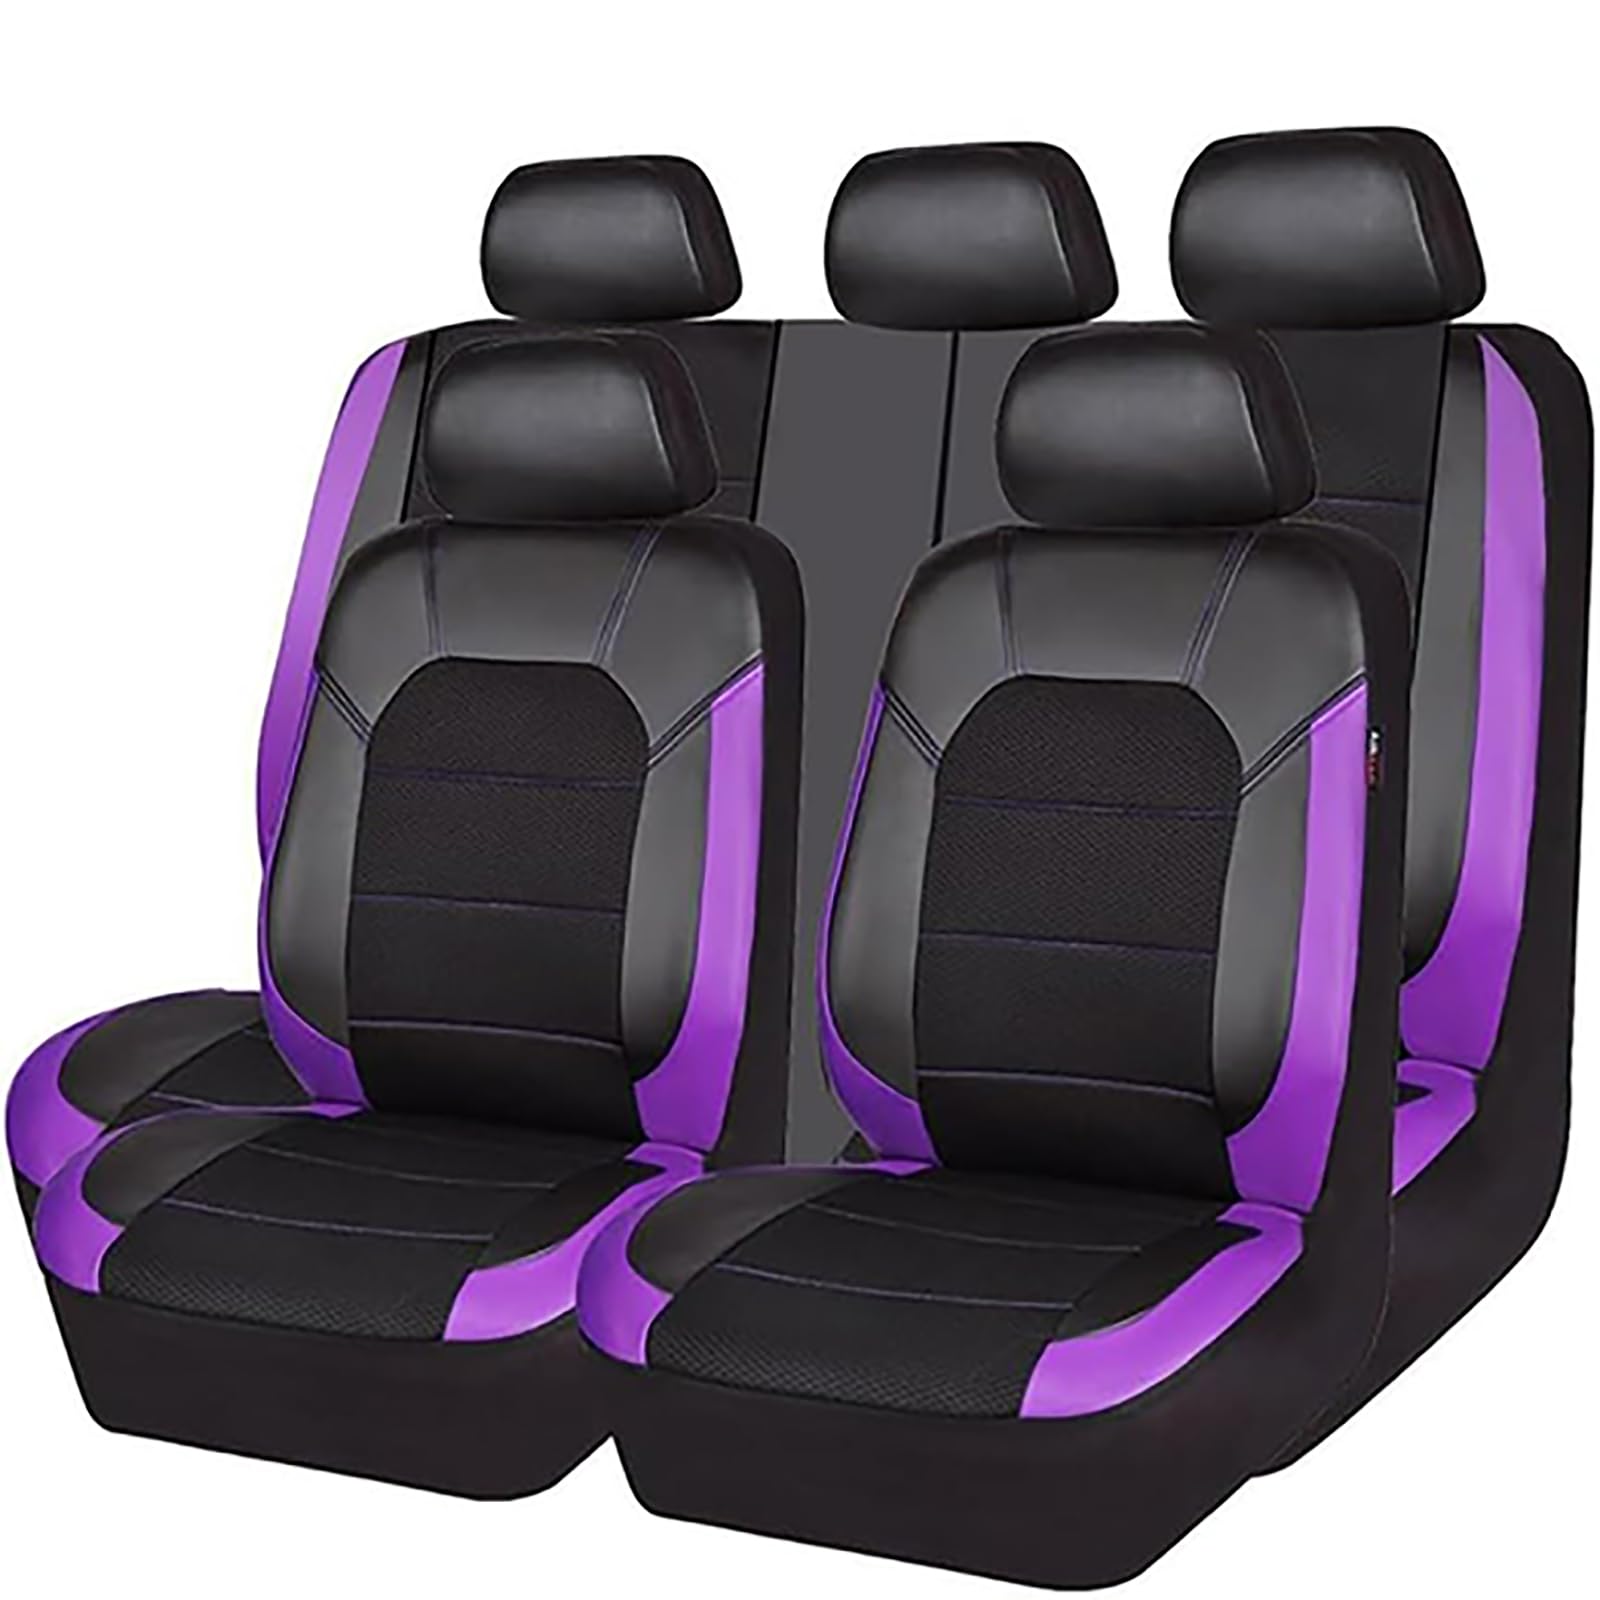 EYHQKRTR Auto Leder Sitzkissen Für R-enault Megane 2000-2024, 5 Sitzer Full Set SitzbezüGe Schonbezug Vorne Rückbank Sitzschutz Compatible Airbag Innenraum Zubehör,E/Purple von EYHQKRTR